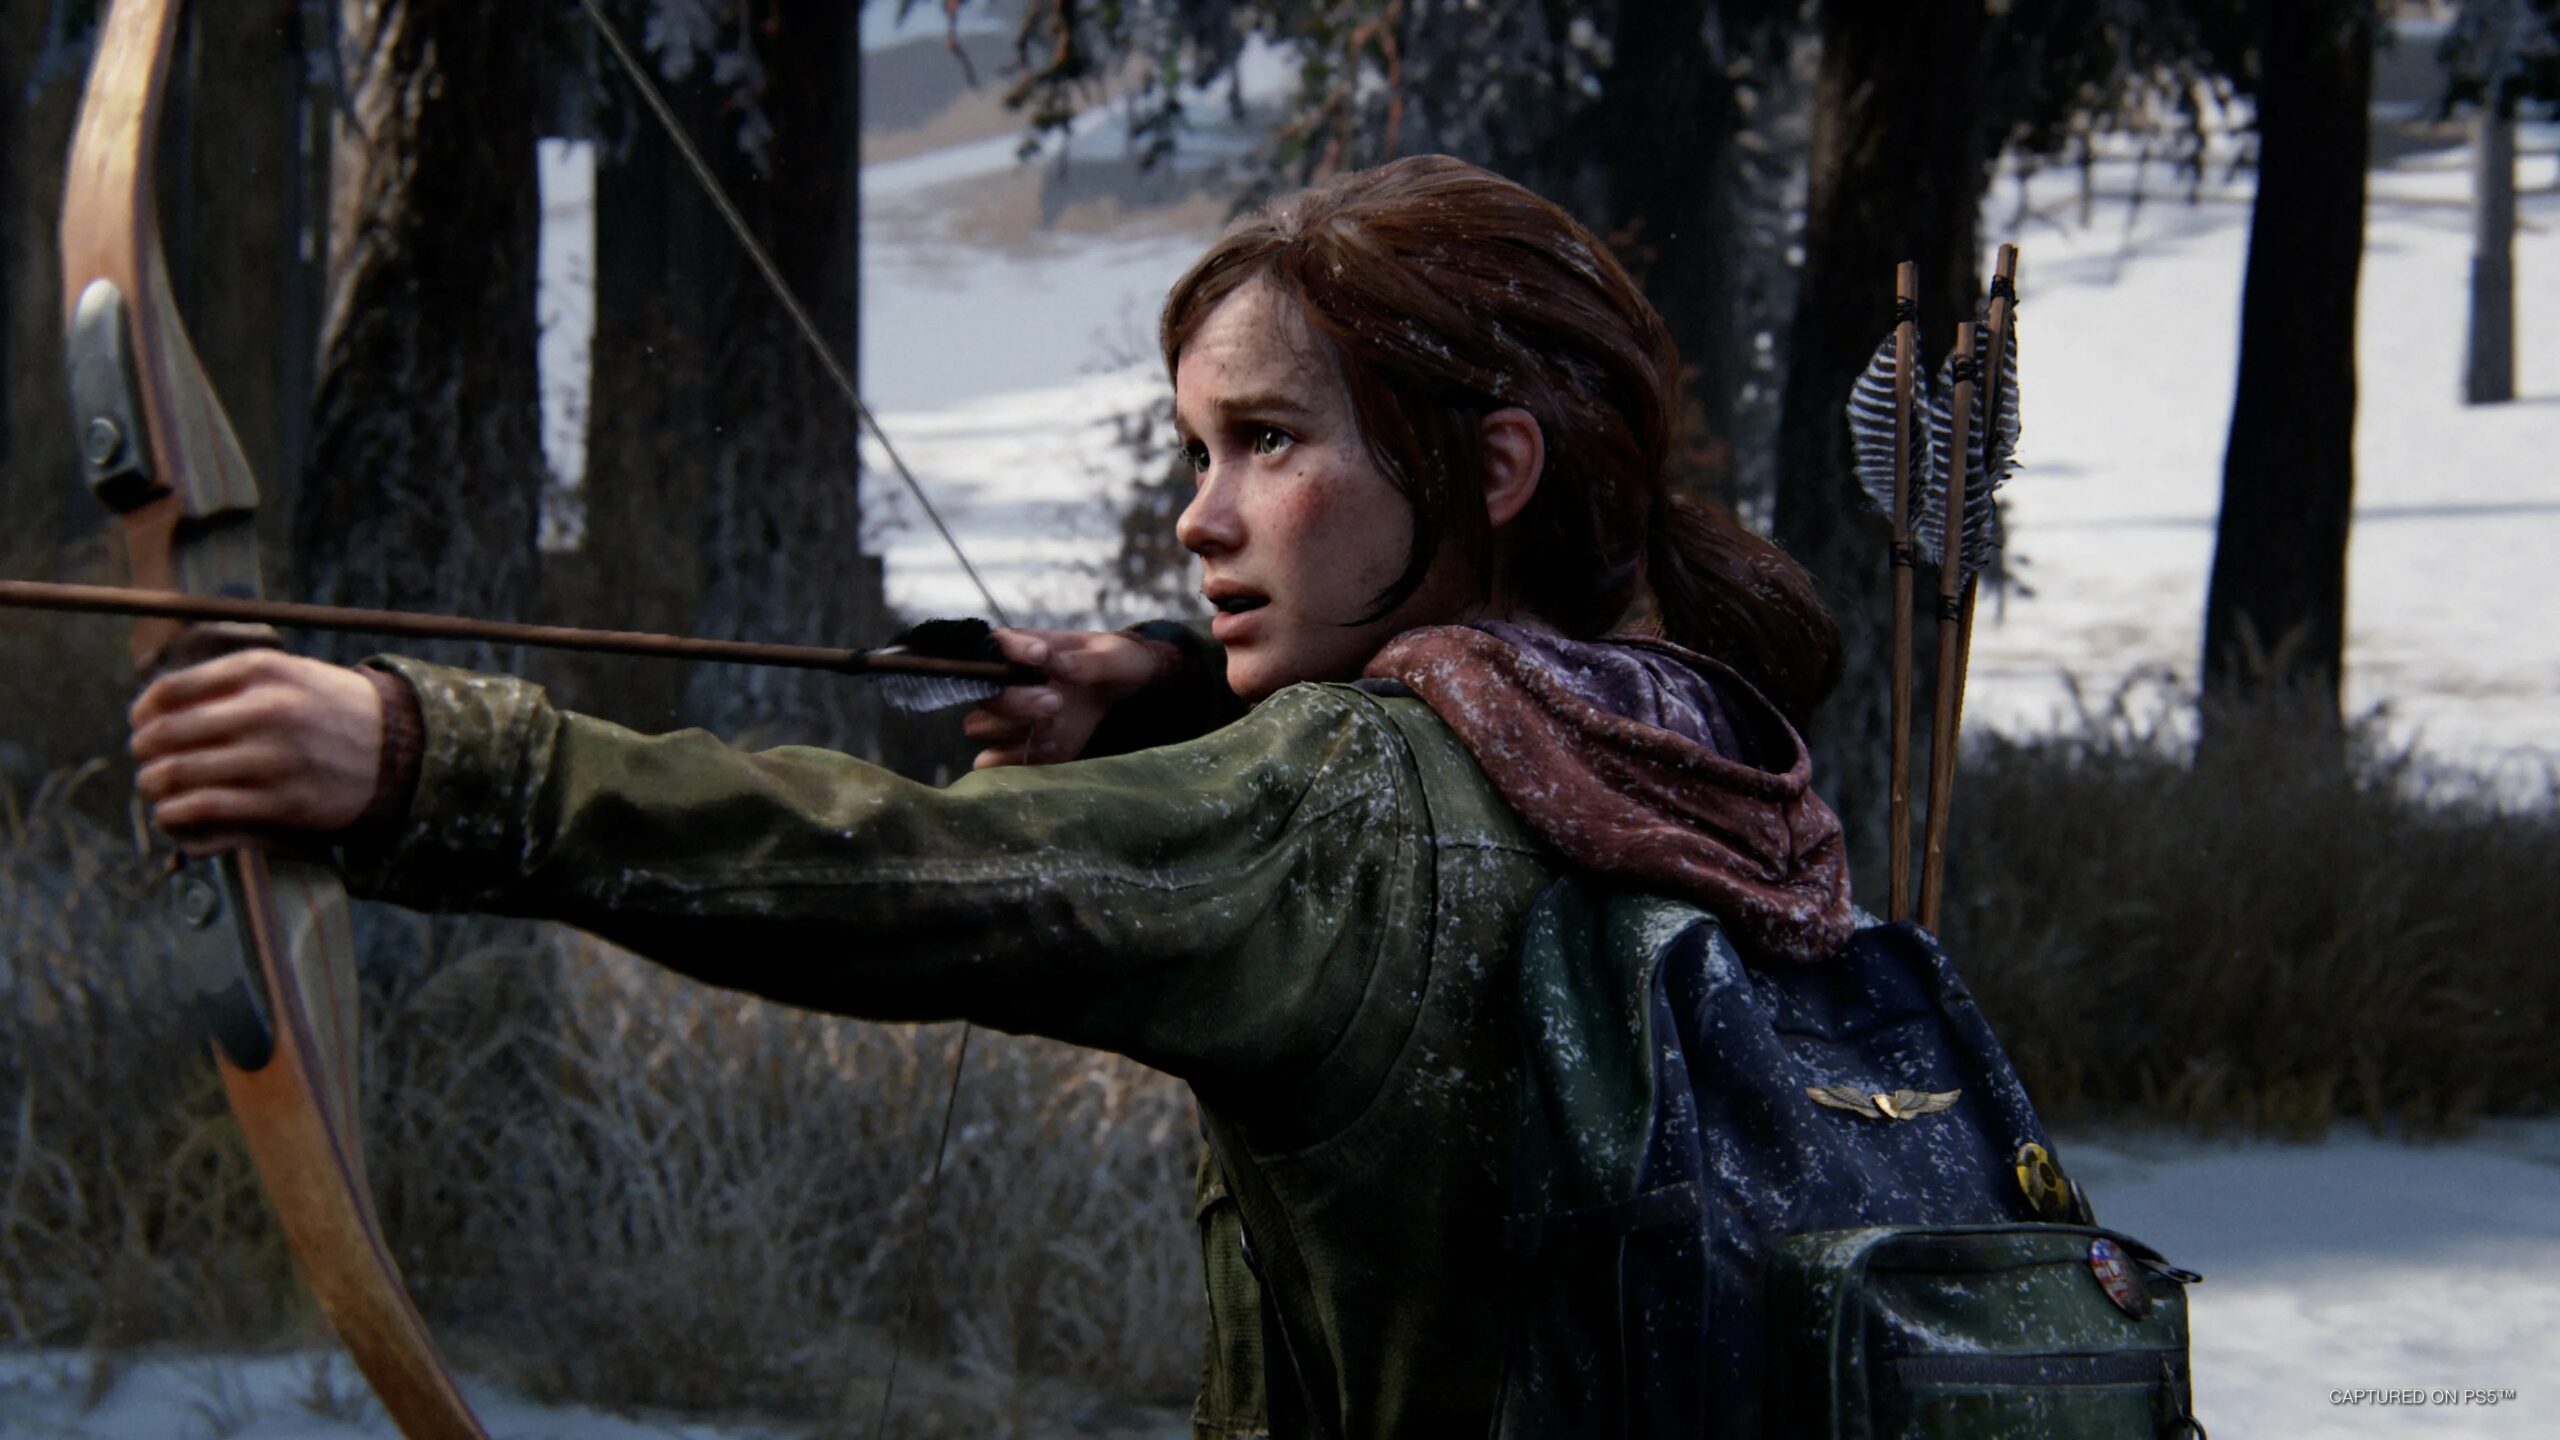 #Medienecho: The Last of Us Part I wird auch von Kritikern kontrovers besprochen